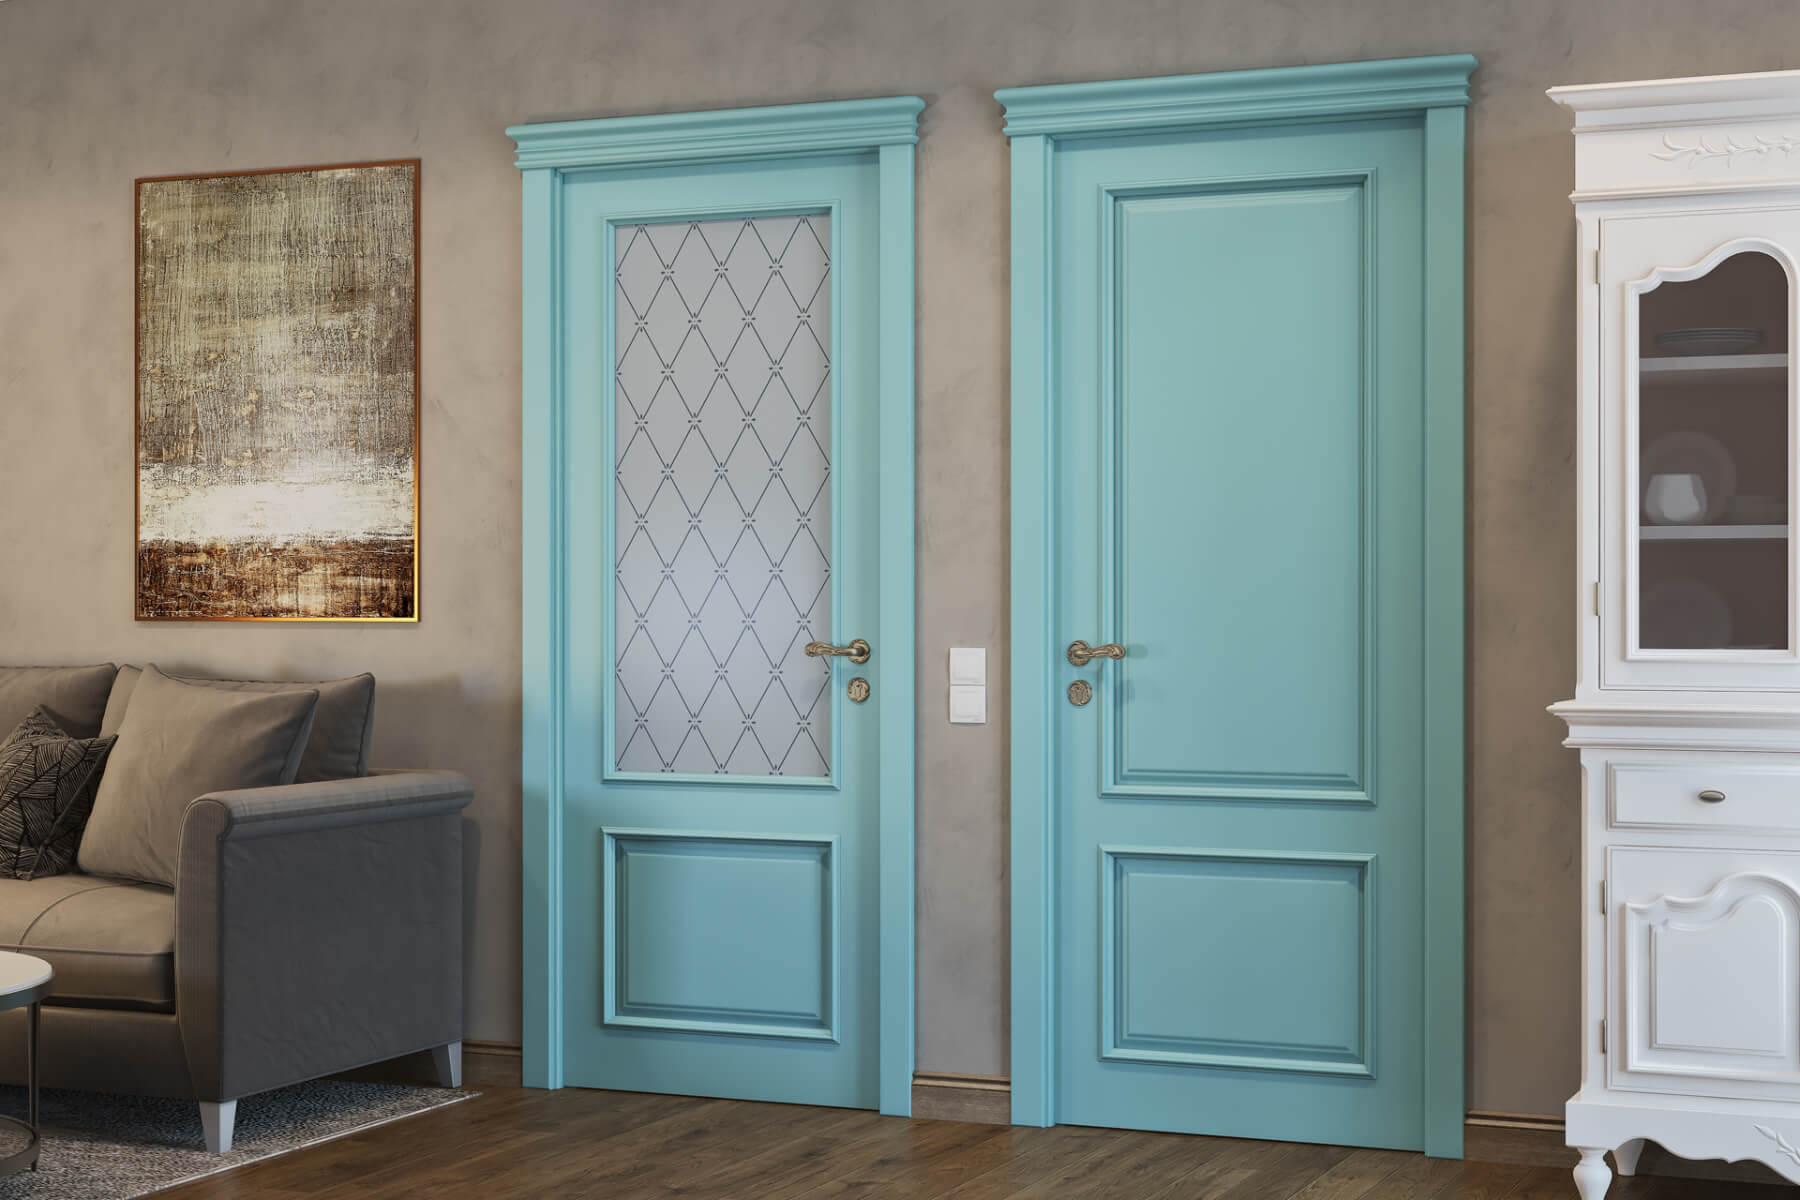 Как красиво покрасить дверь. Крашеные двери. Окрашенные двери межкомнатные. Крашеные двери деревянные. Цветные двери в интерьере.